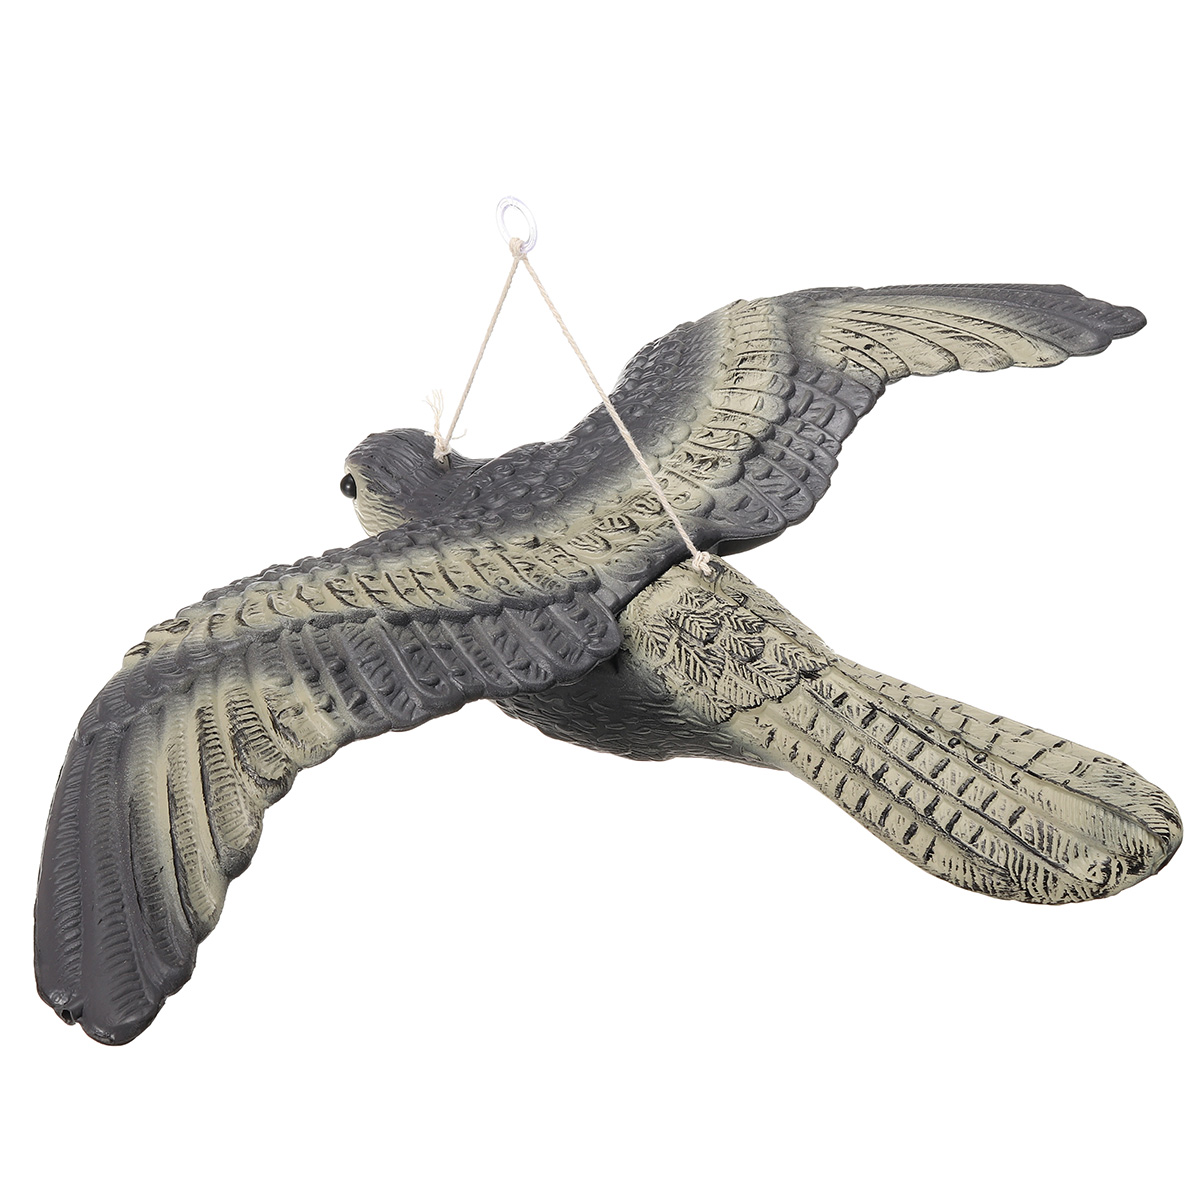 Falcon-Hawk-Hunting-Decoy-Bird-Deterrent-Scarer-Outdoor-Garden-Hunting-Equipment-1556624-6